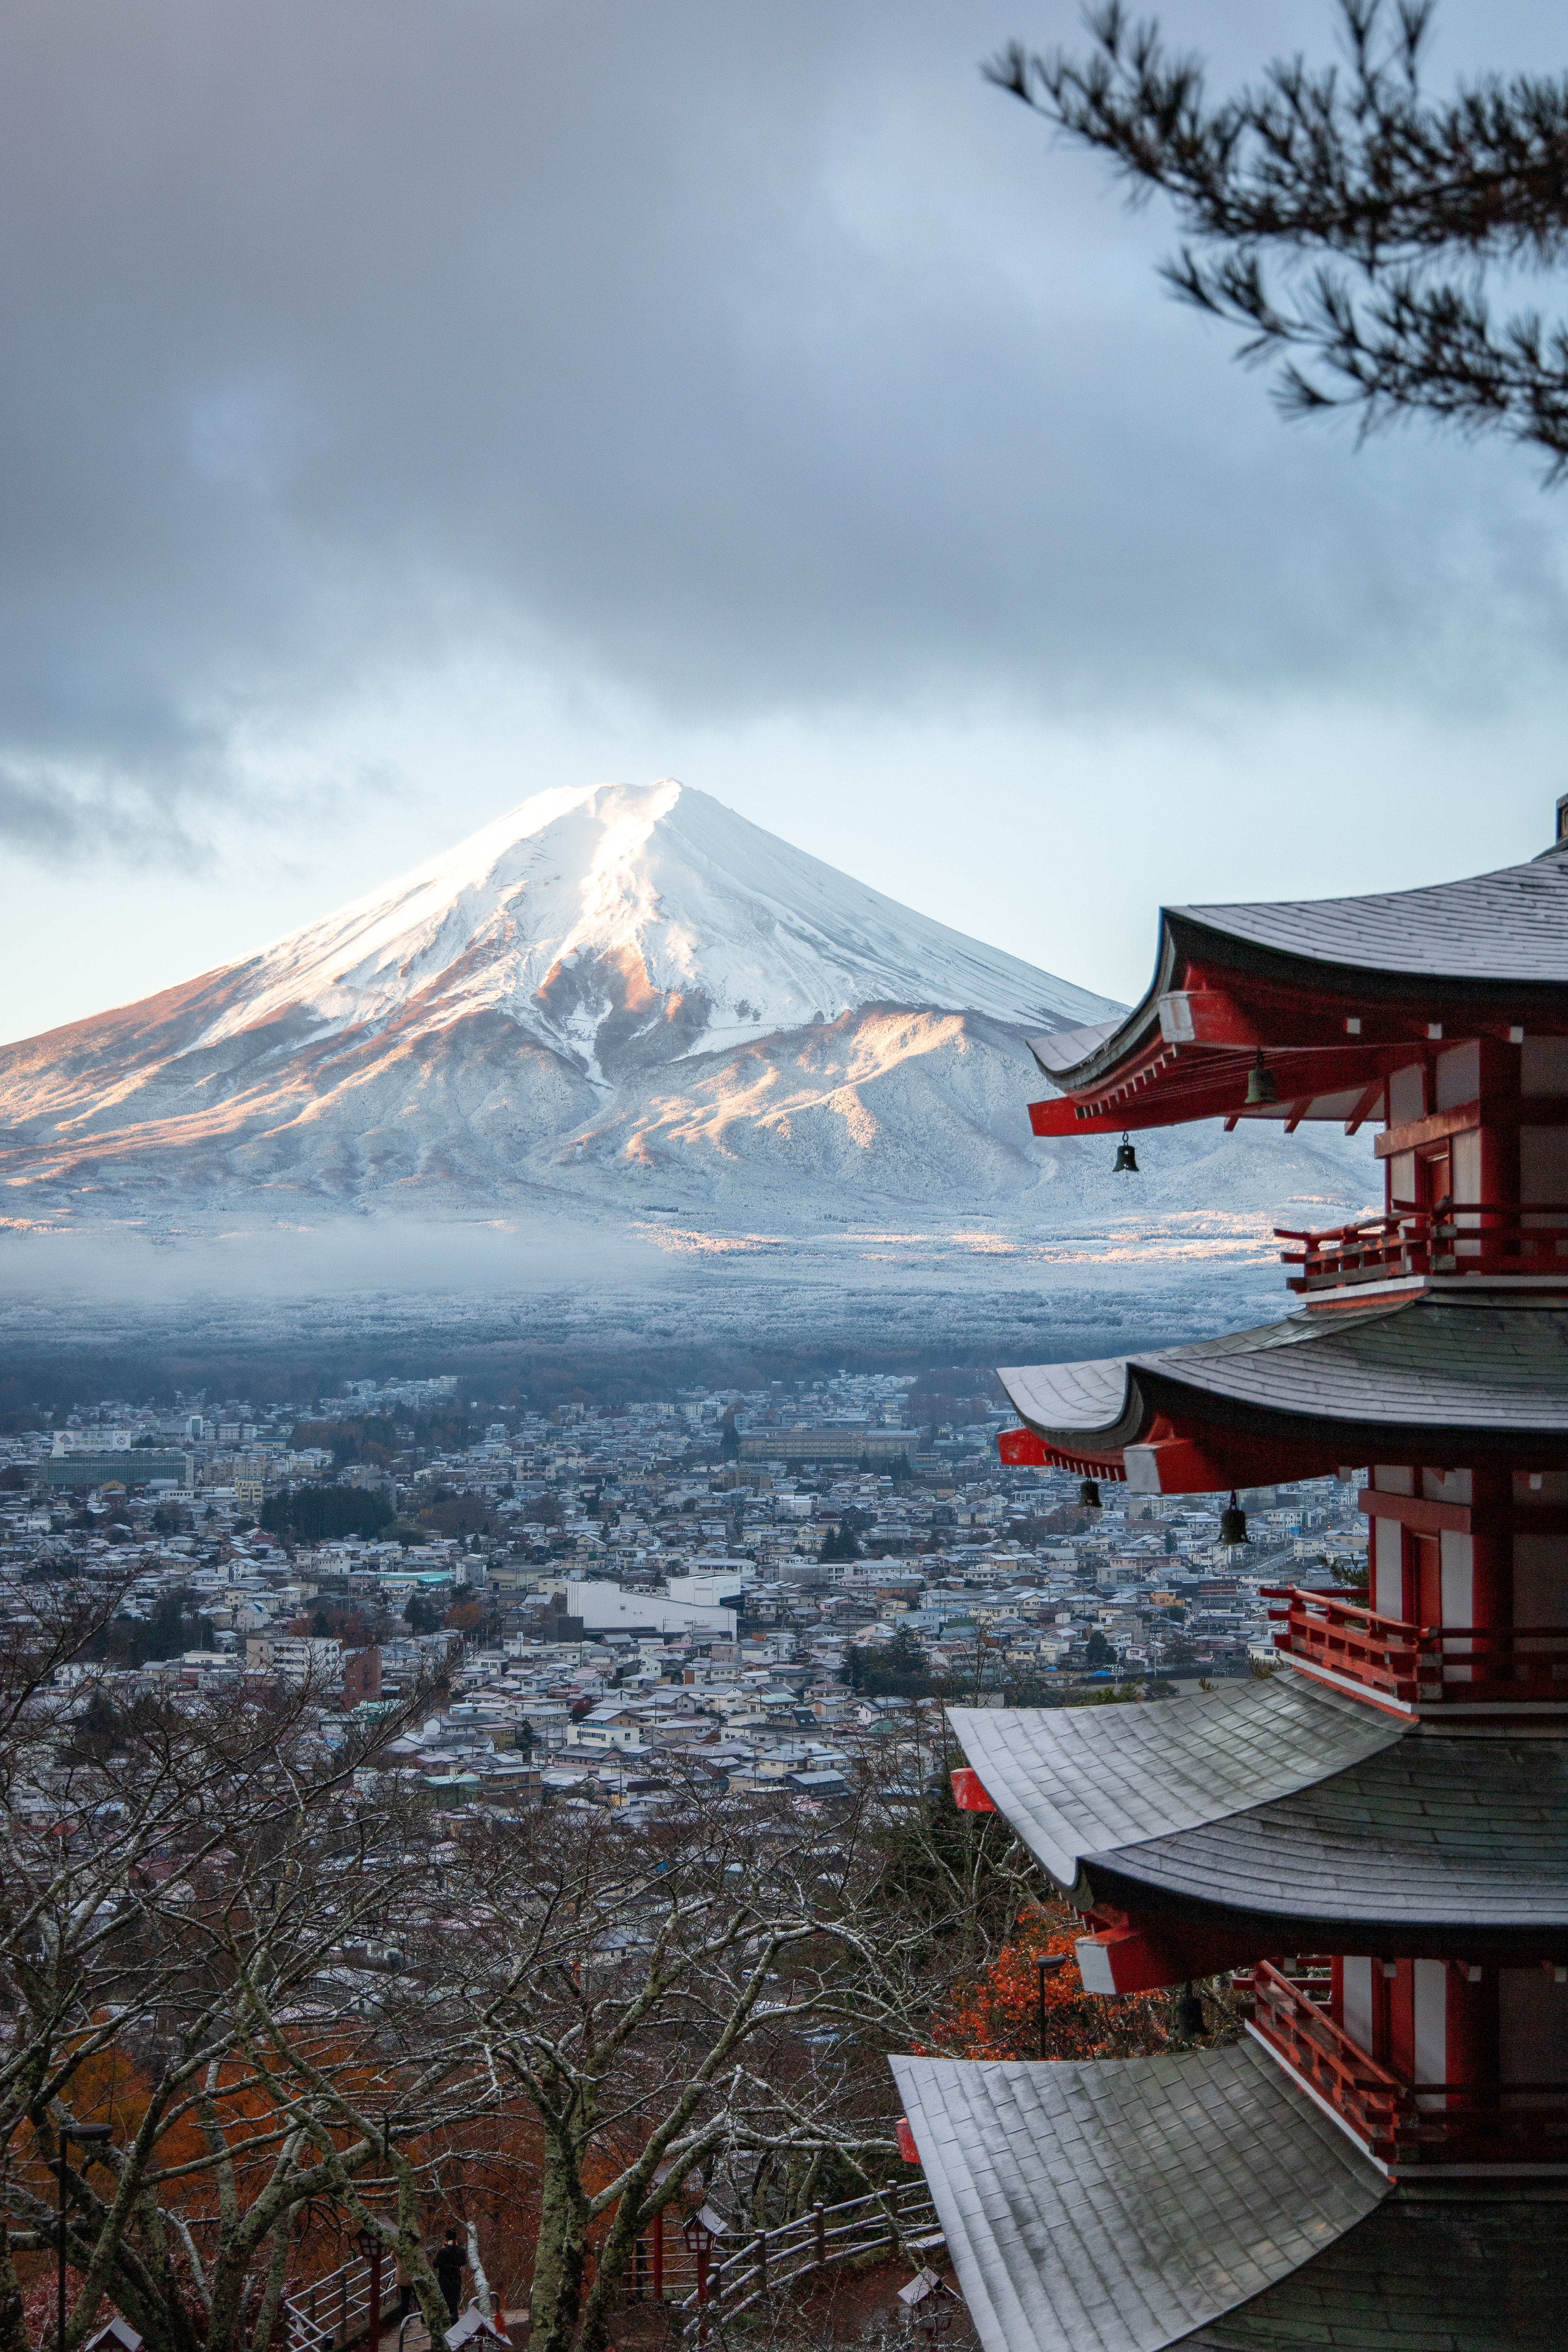 Zdjęcie przedstawia górę Fuji i miasto położone poniżej. Kadr jest zrobiony z daleka. Na pierwszym planie, po prawej stronie widoczny jest czerwony, drewniany budynek. Jest widoczna jedynie jego część, a dokładniej 3 boczne dachy ułożone jeden nad drugim. Nad najwyższym dachem można zauważyć gałęzie drzewa z uschniętymi liśćmi. Góra Fuji znajduje się w centrum zdjęcia, w głębi. Jest bardzo dobrze widoczna. Szczyt góry jest przyprószony śniegiem. Poniżej widać skały oświetlone 1 promieniem słońca, a poniżej wstążkę mgły. Niebo nad górą jest jasno niebieskie ale z lewej strony widać nadciągające ciemno granatowe chmury. U podnóża gór widac rozległe miasto. W panoramie miasta, nie odznacza się żaden budynek. Wszystkie widoczne zabudowania są kwadratowe niskie i pokryte białym kolorem. Być może to śnieg. Cały krajobraz przywodzi na myśl początek zimy z chłodem i małą jeszcze ilością śniegu.